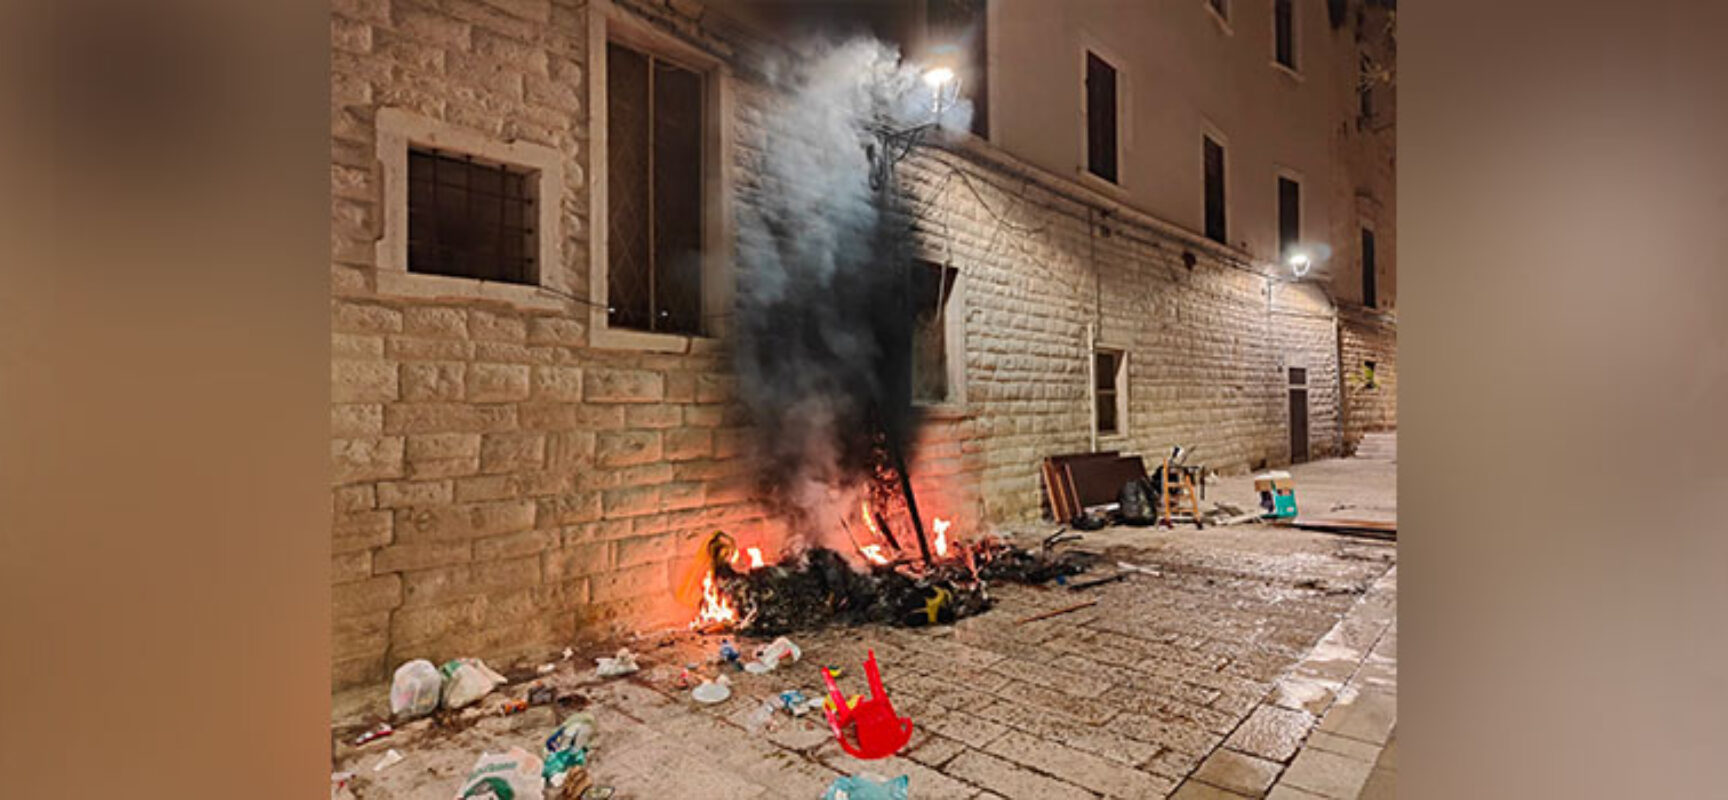 Incendio nella notte, danneggiata parete esterna di Palazzo San Domenico / FOTO